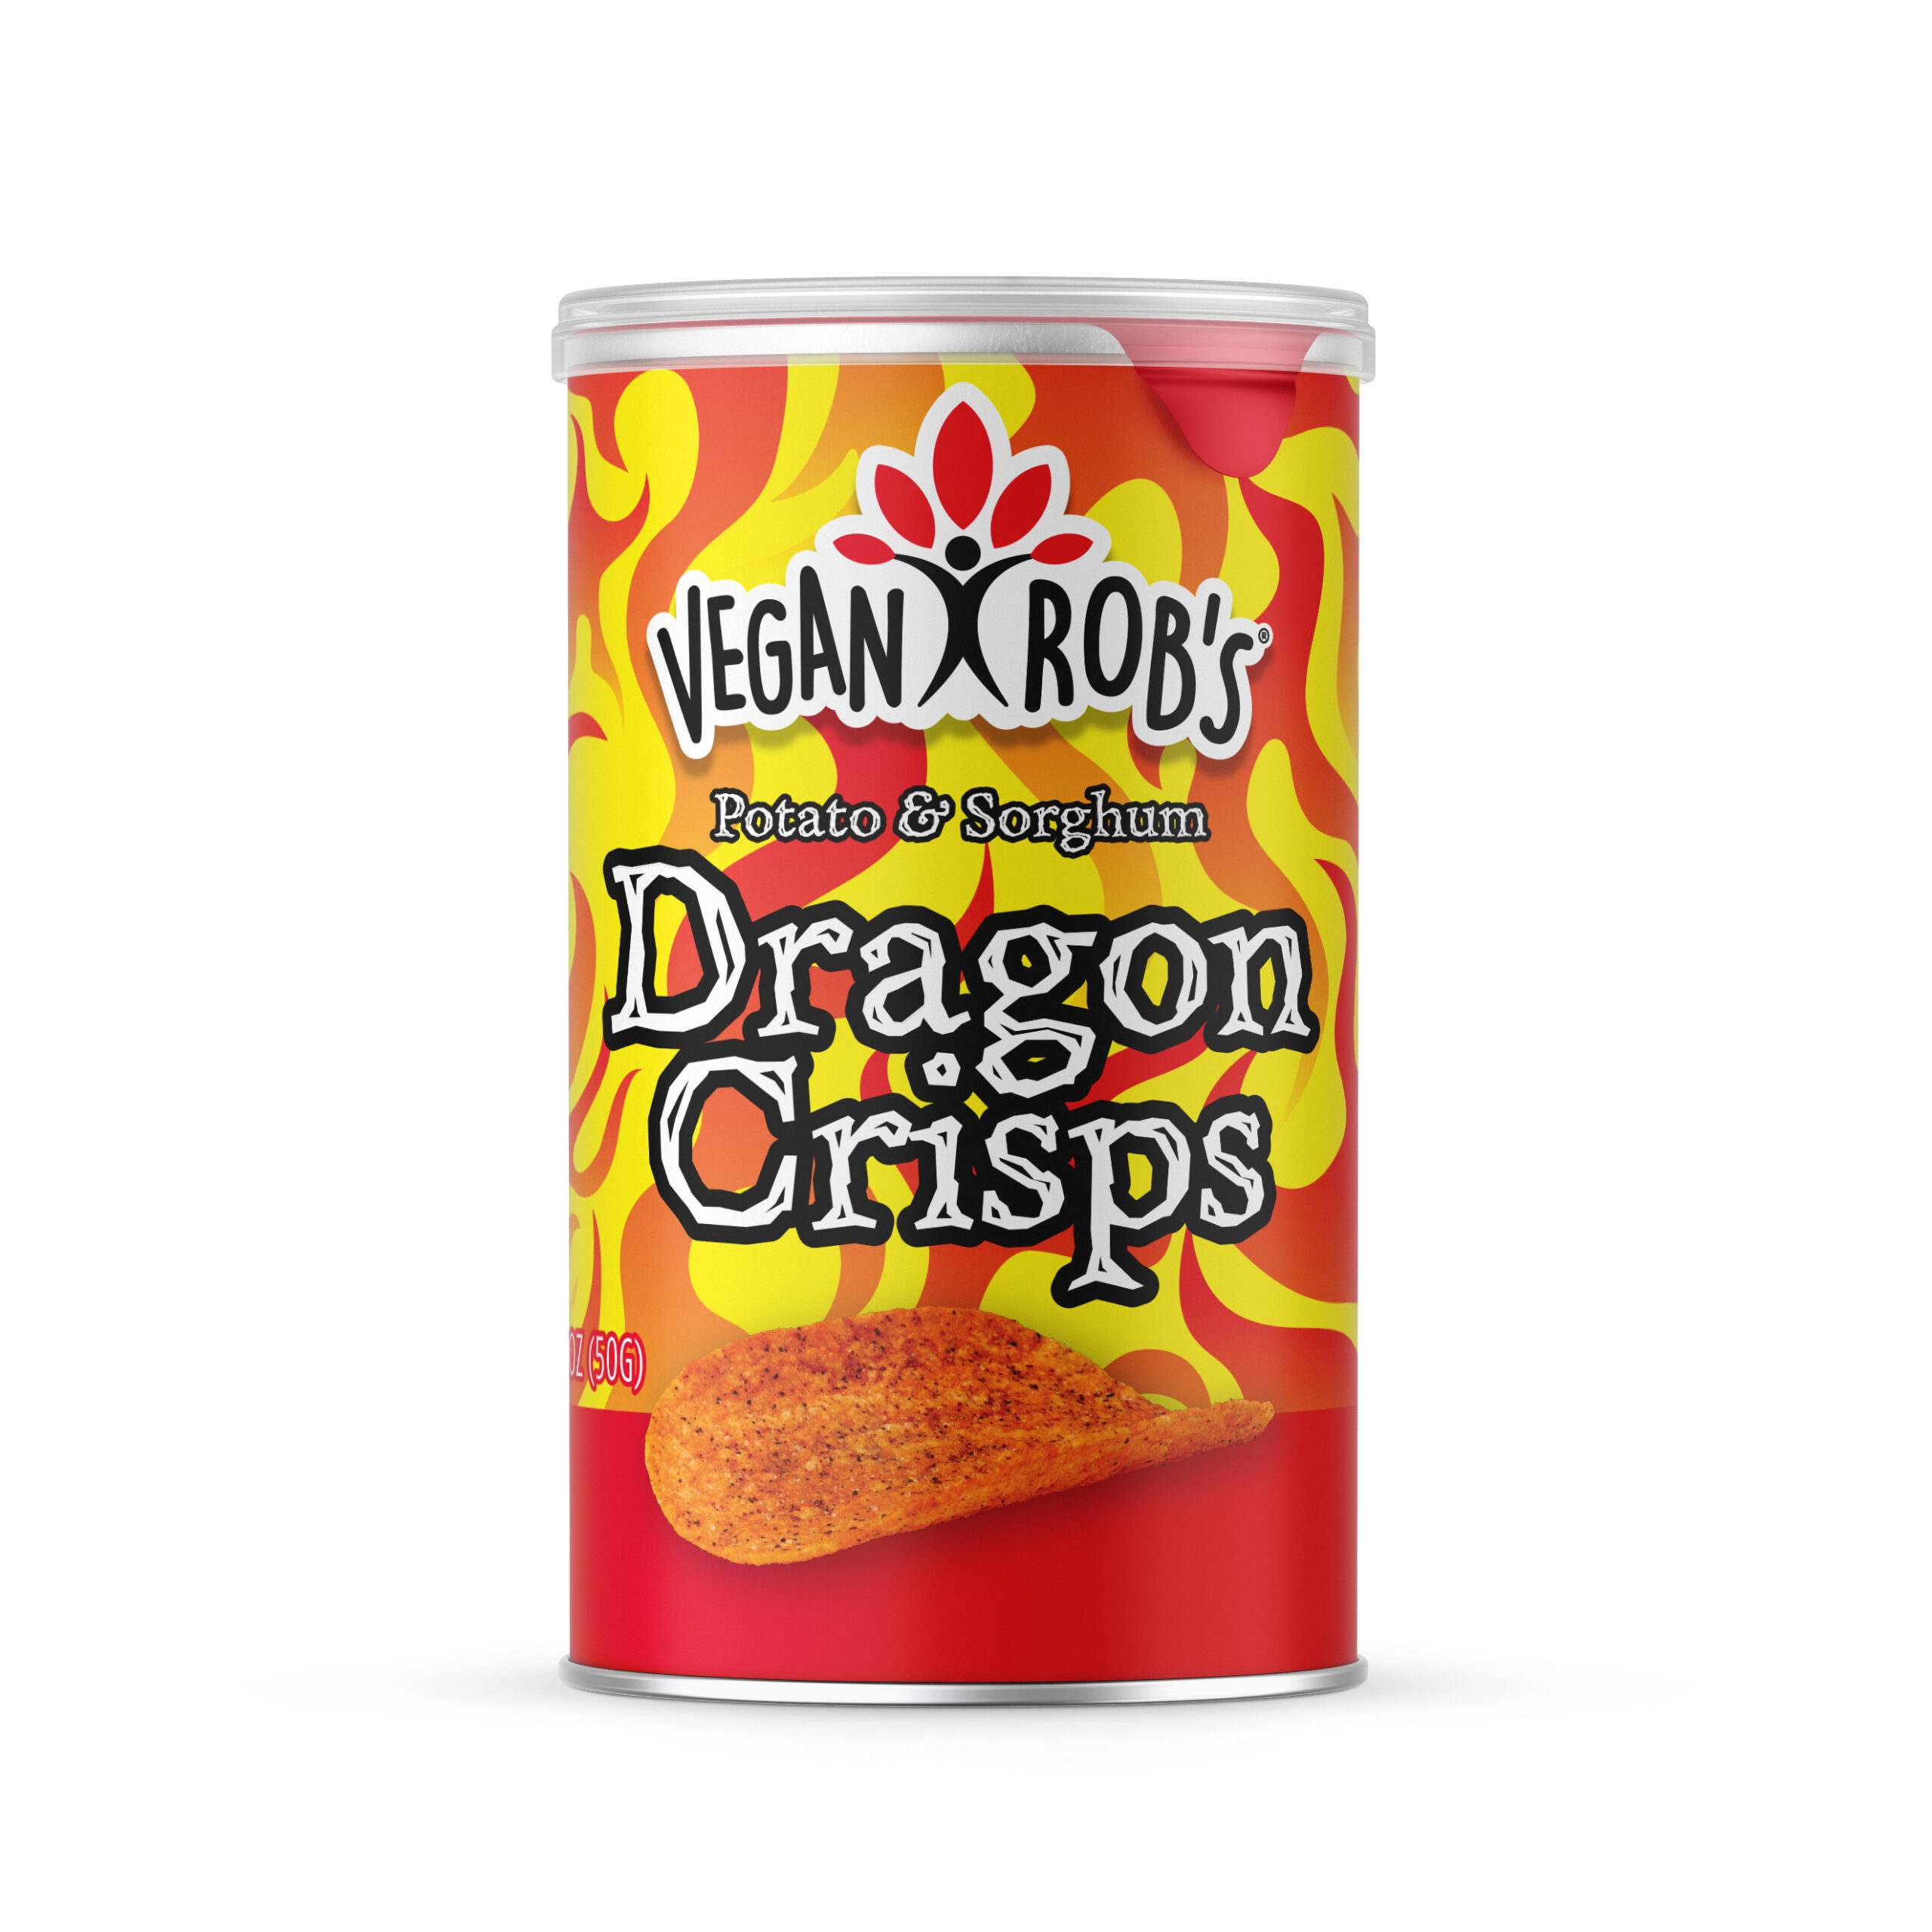 Vegan Rob's Dragon Crisps